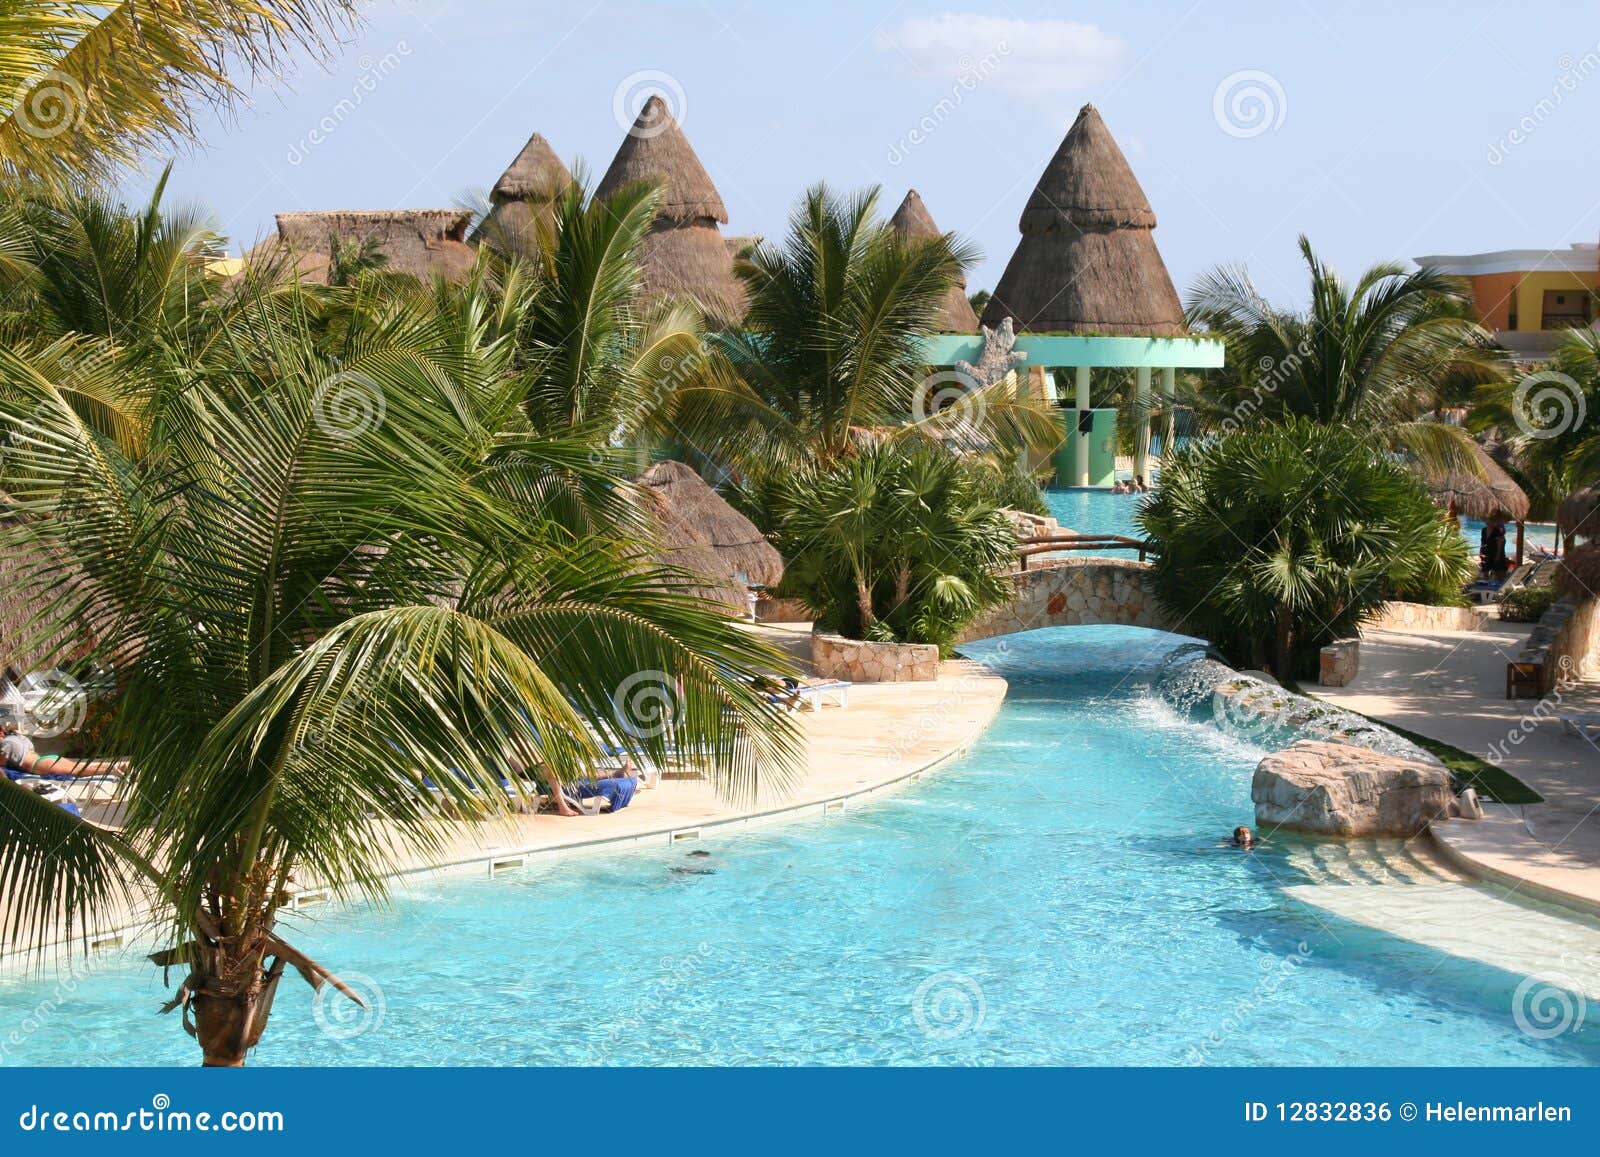 mexico riviera maya iberostar paraiso lindo pool